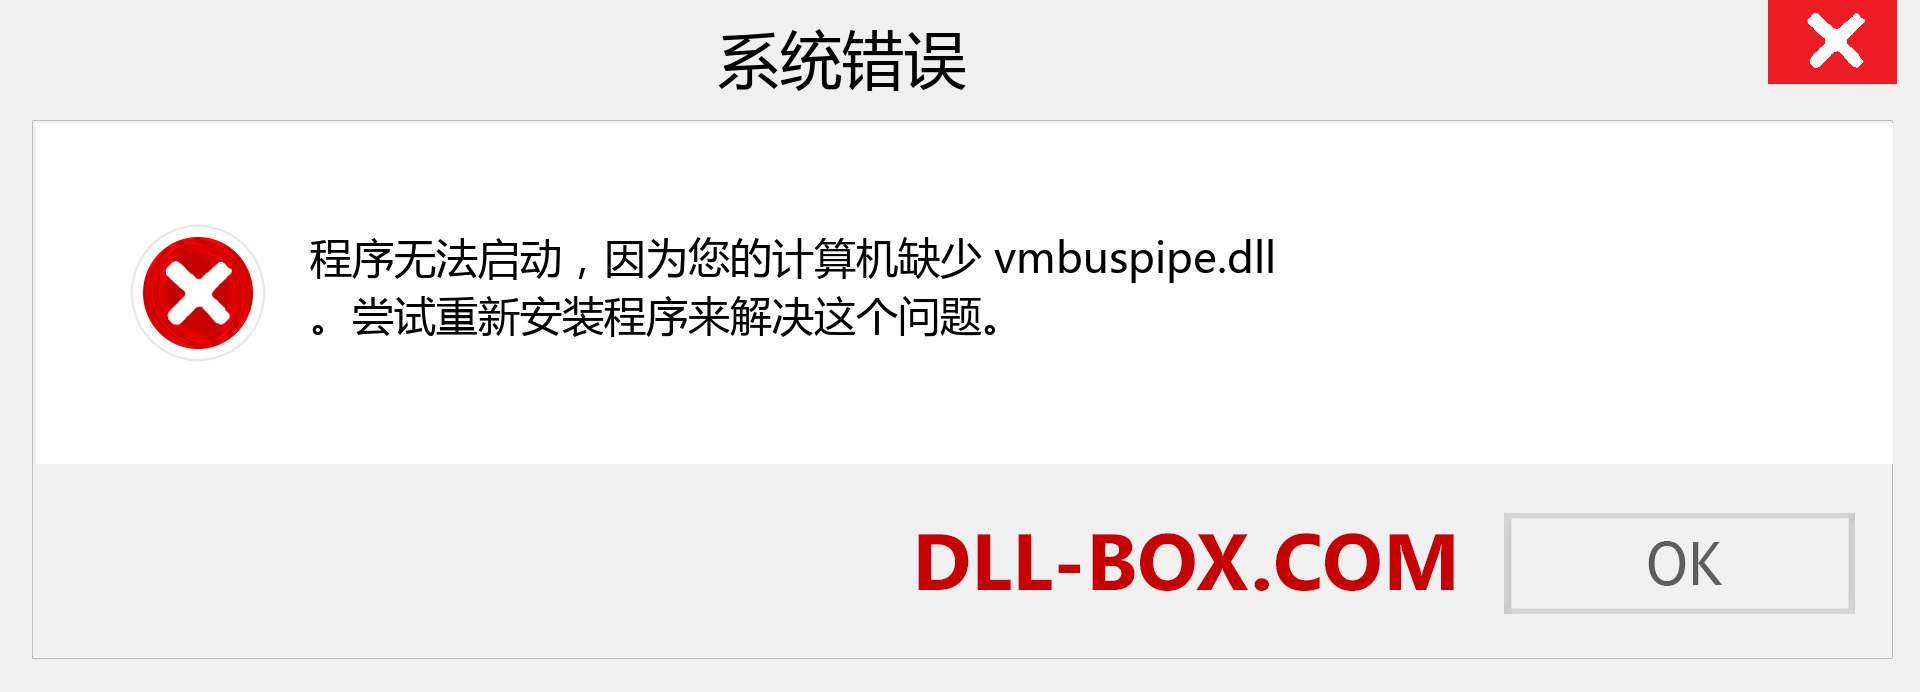 vmbuspipe.dll 文件丢失？。 适用于 Windows 7、8、10 的下载 - 修复 Windows、照片、图像上的 vmbuspipe dll 丢失错误